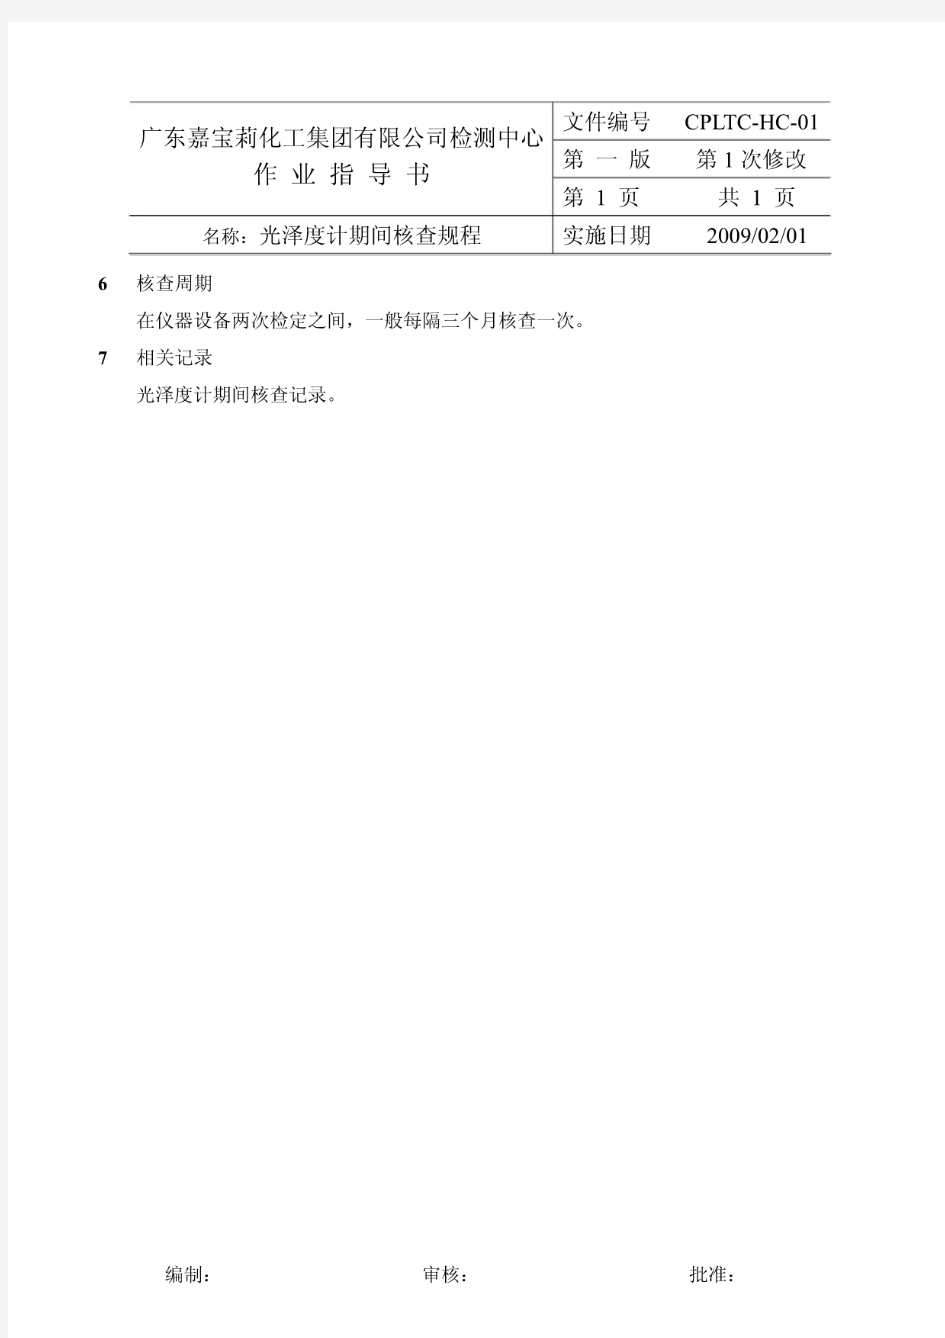 广东嘉宝莉化工有限公司检测中心作业指导书-光泽度计期间核查规程